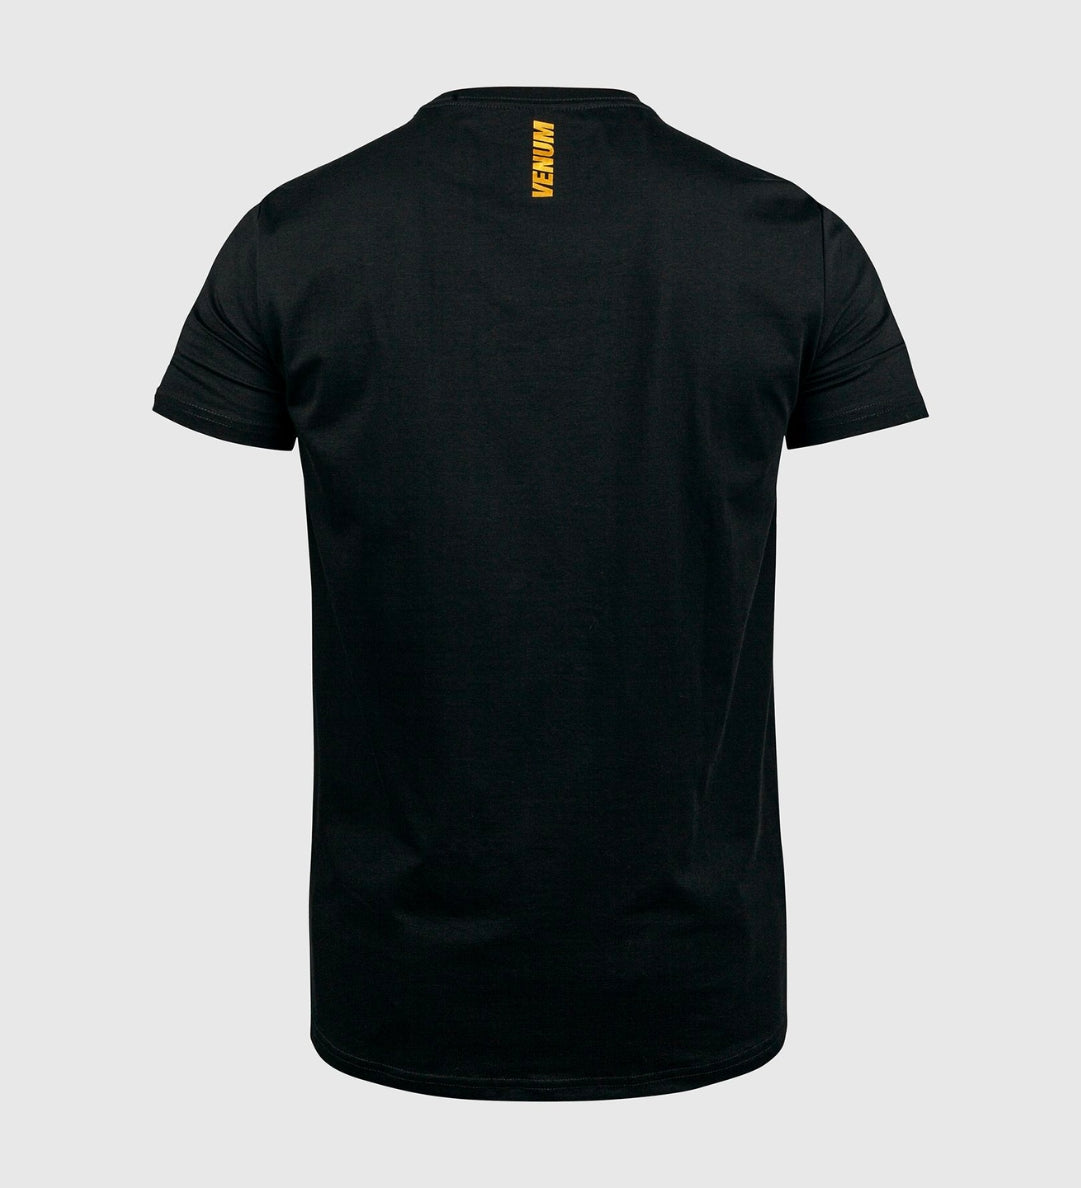 Venum T-shirt MMA - Zwart/Goud